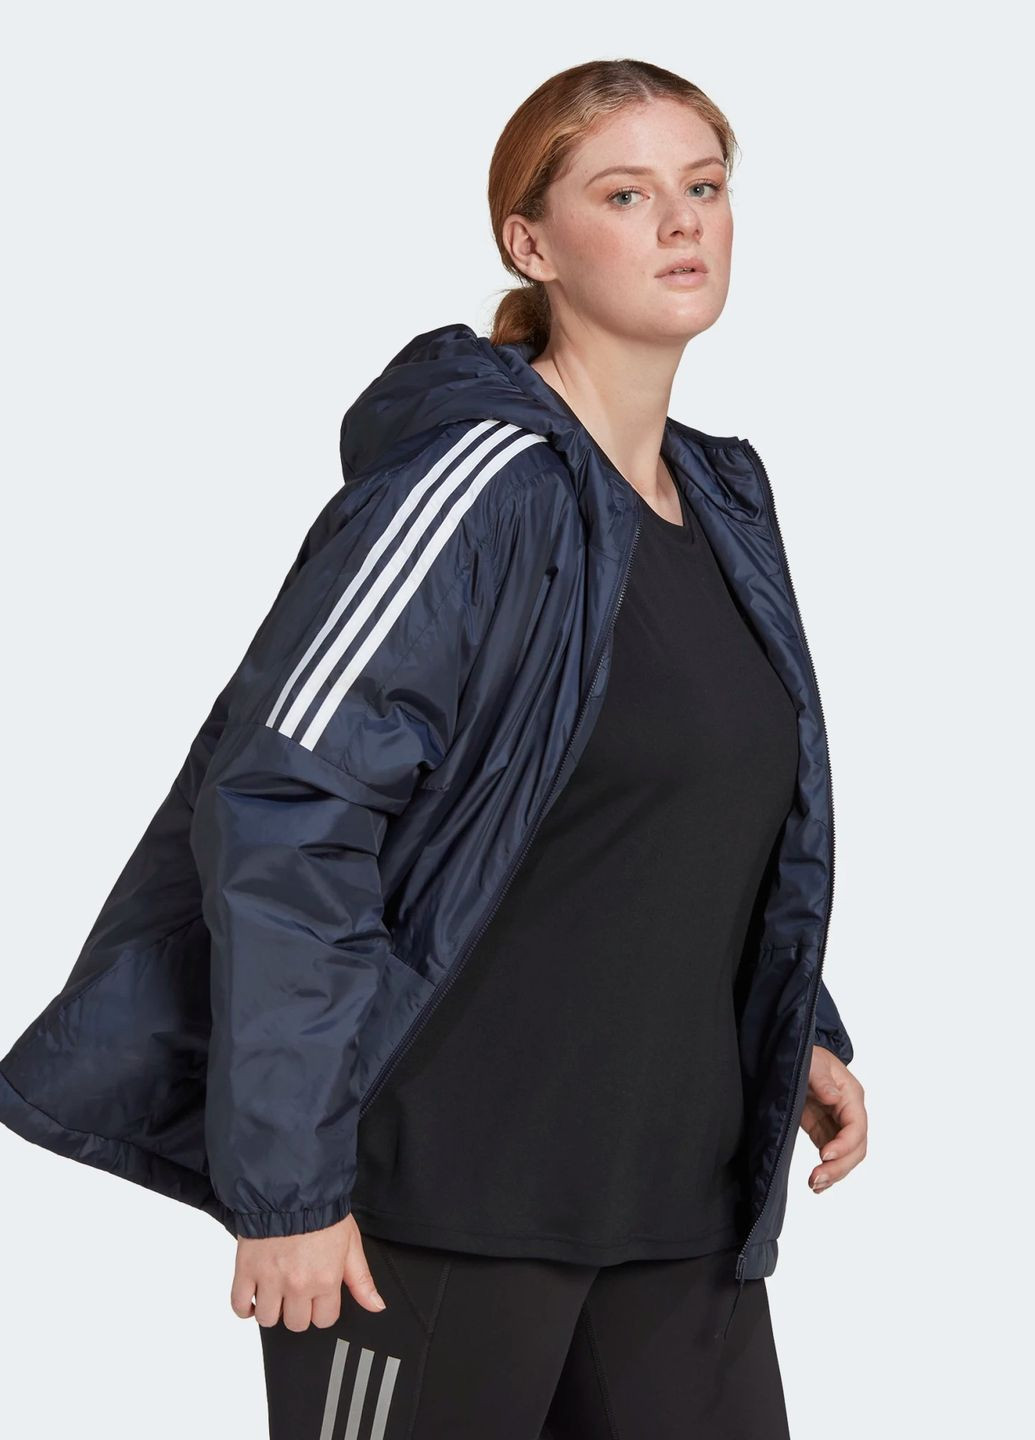 Темно-синяя женская куртка с капюшоном. adidas Essentials (plus size)